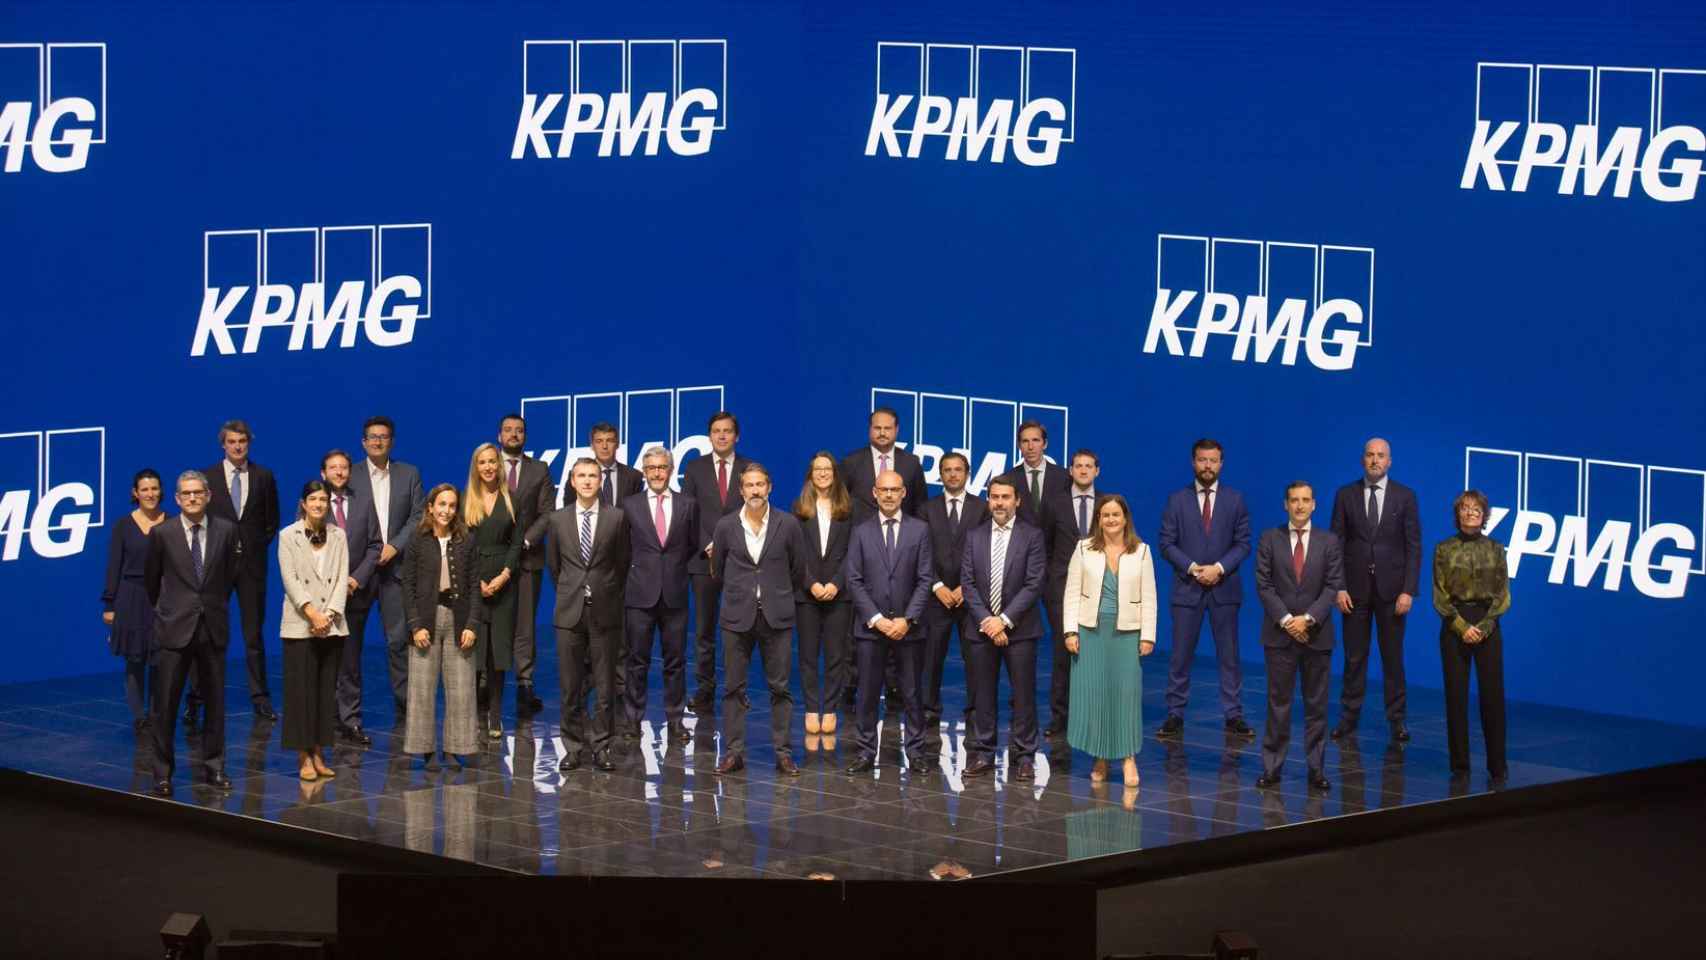 El presidente de KPMG en España, Juanjo Cano, junto a los 25 nuevos socios recientemente nombrados por la firma